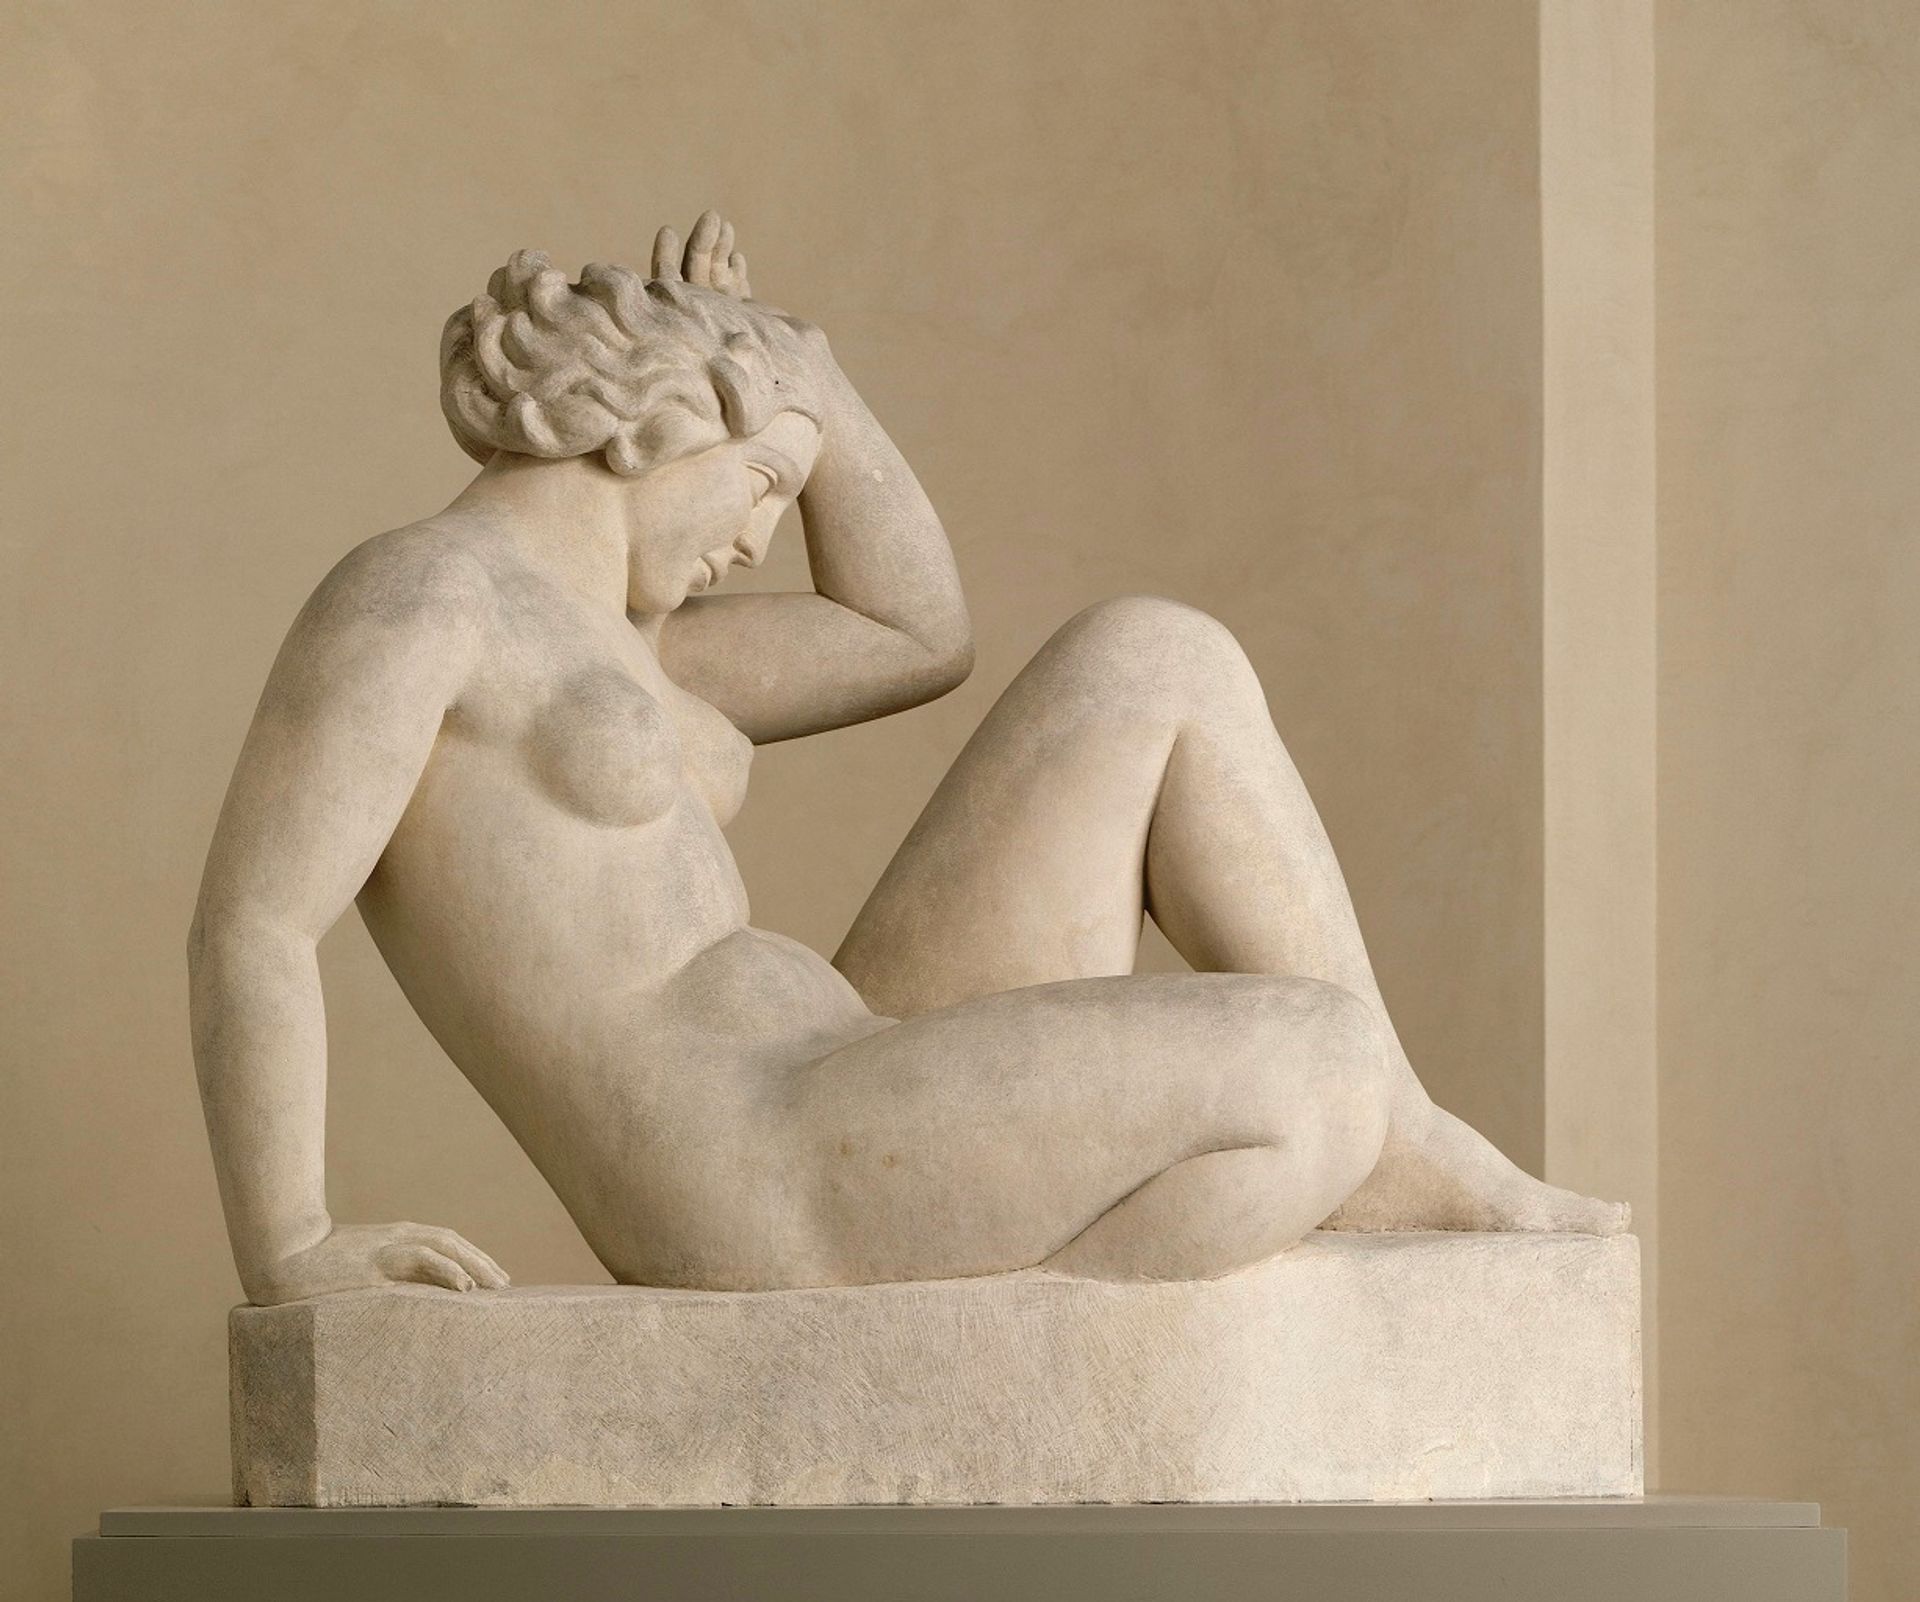 Aristide Maillol, La Montagne, 1937, pierre, Lyon, musée des Beaux-Arts. © RMN – Grand Palais (musée d’Orsay)/ René-Gabriel Ojéda